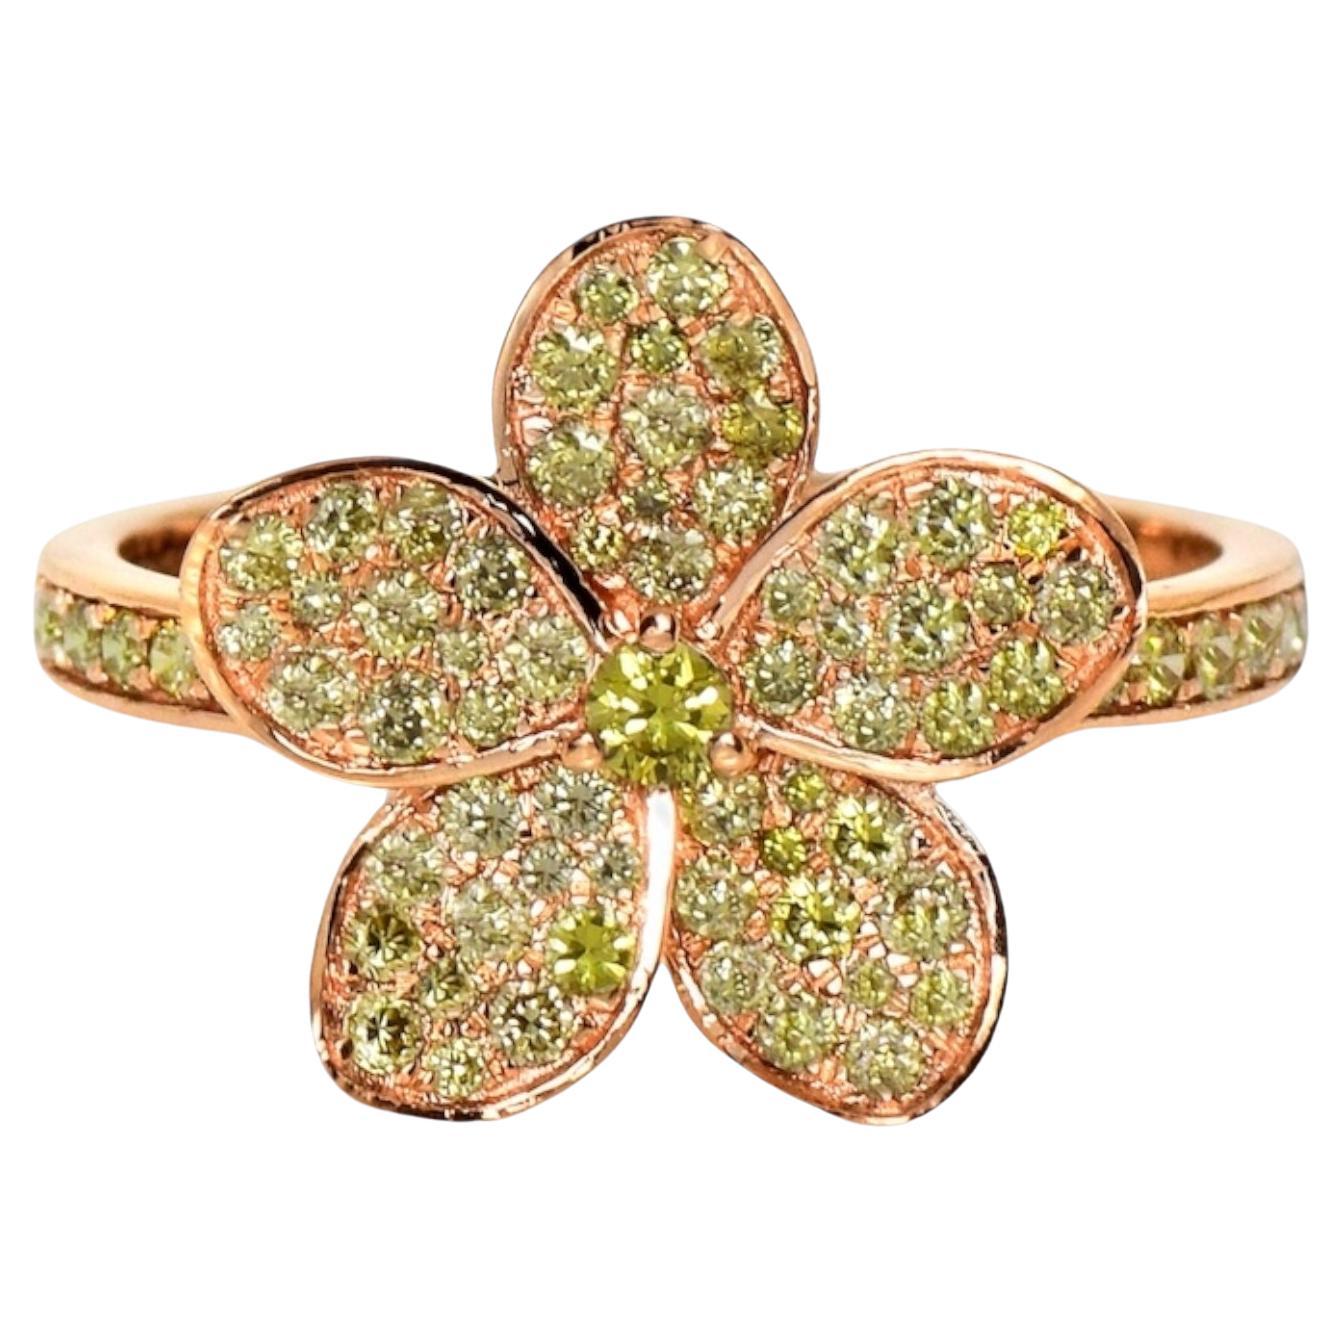 IGI 14K 0.66 ct Natural Greenish Yellow Diamond Flower Design Engagement Ring